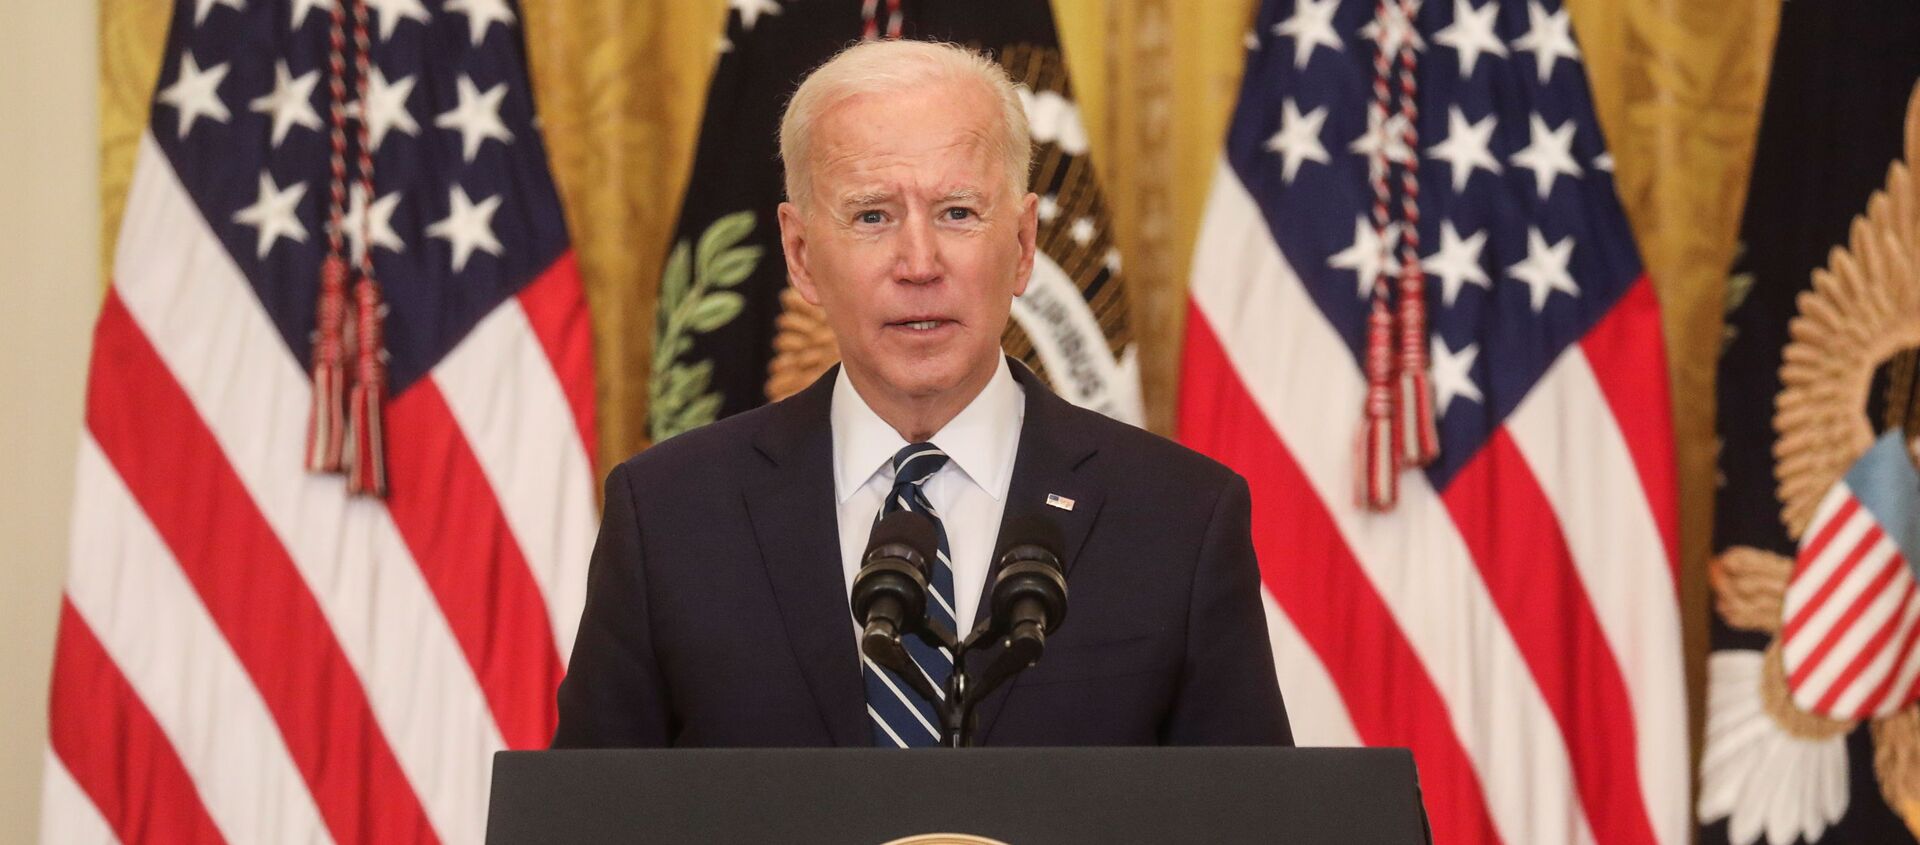 Tổng thống Mỹ Joe Biden phát biểu tại Nhà Trắng trong cuộc họp báo đầu tiên trên cương vị Nguyên thủ quốc gia - Sputnik Việt Nam, 1920, 26.03.2021